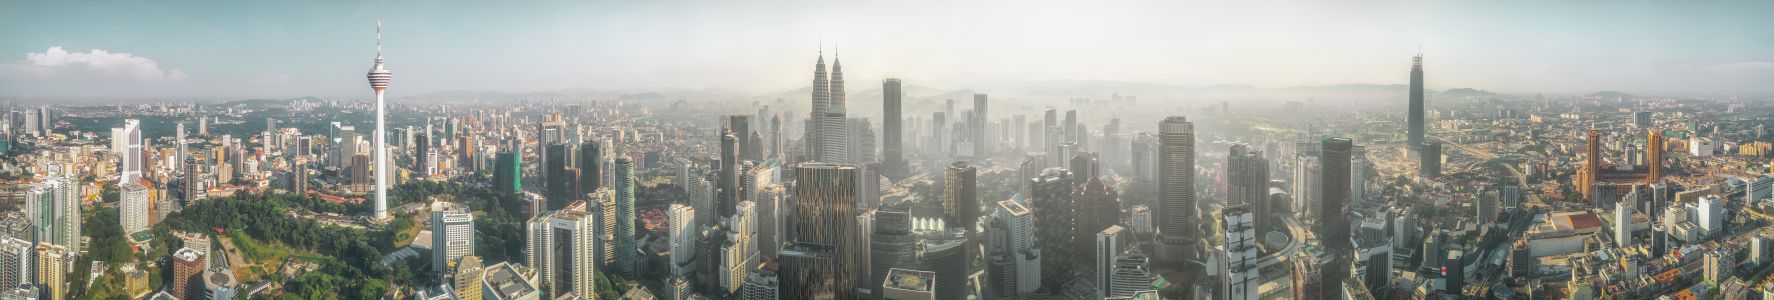 建筑,吉隆坡,现代建筑,城镇,都市,国外,雾,日出,全景,航拍,旅游,背景素材,自然图像,自然风景,天空